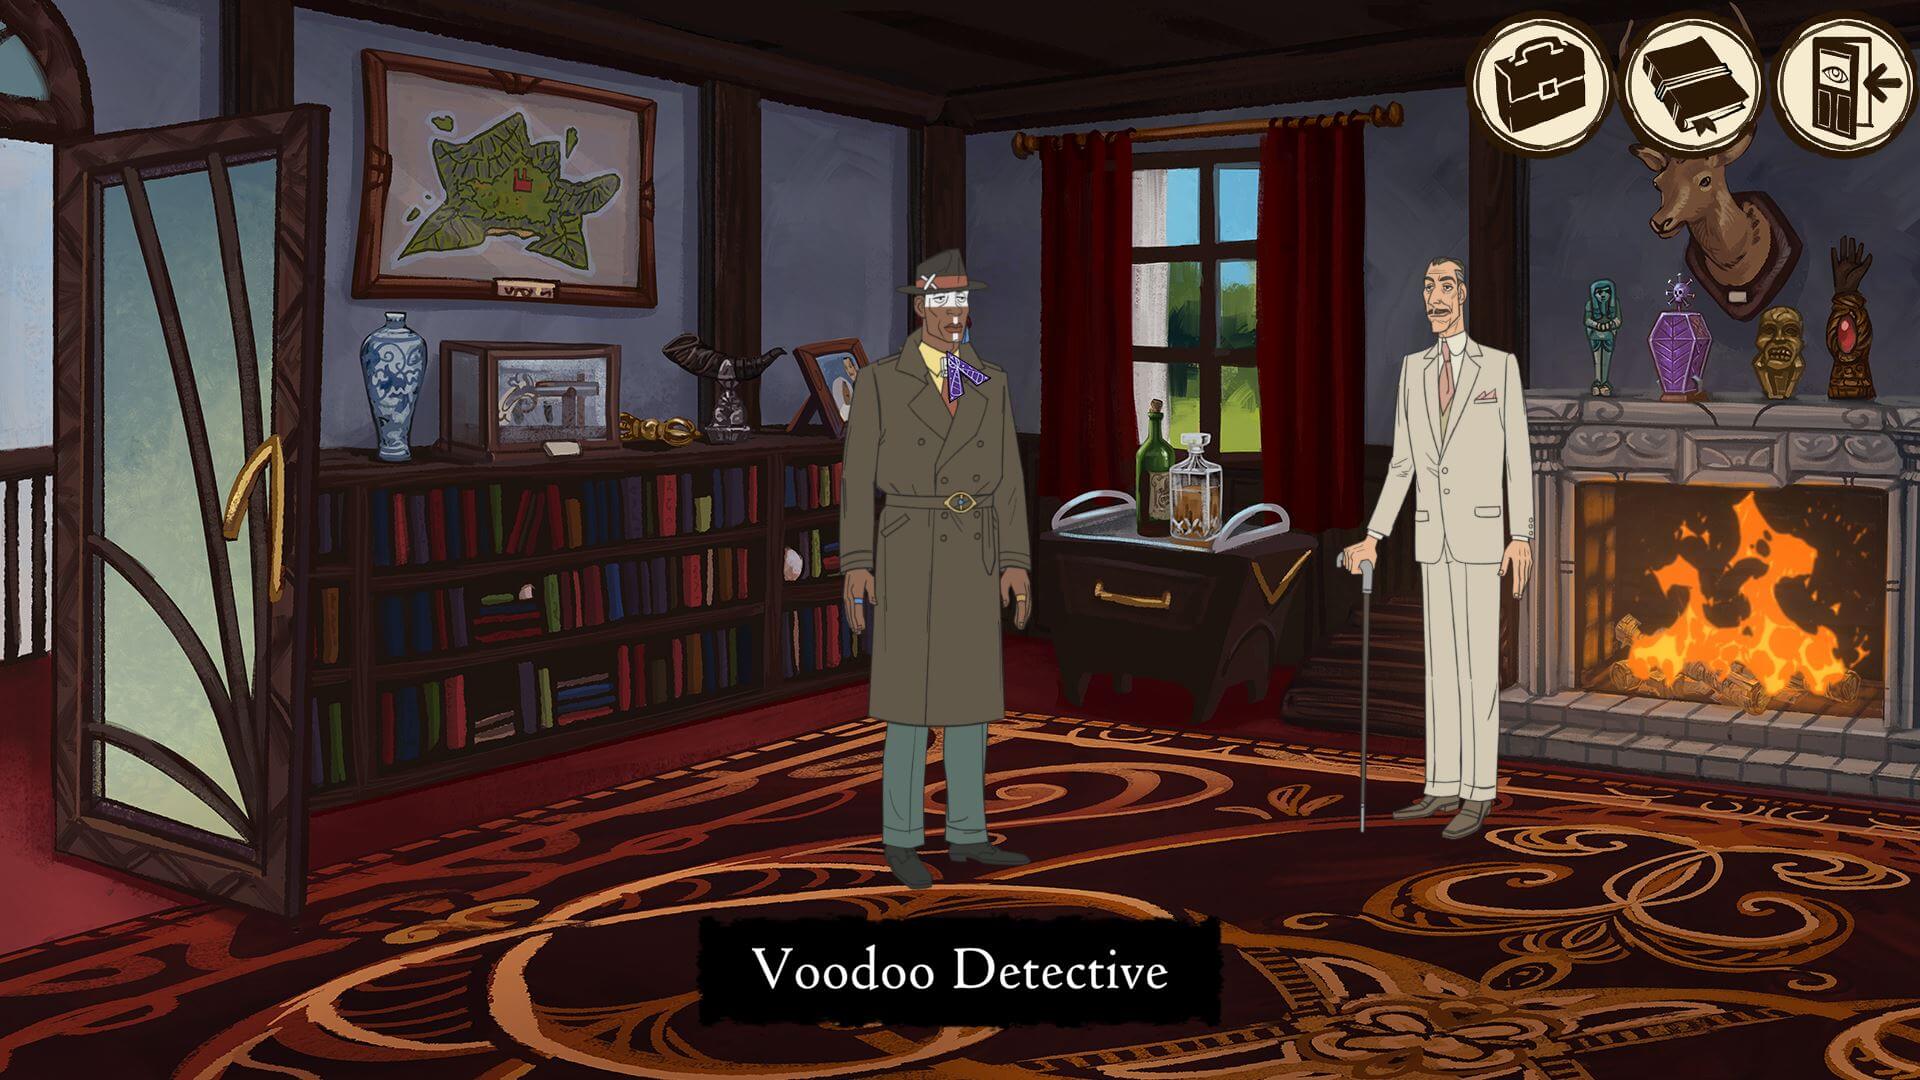 voodoo detective character art